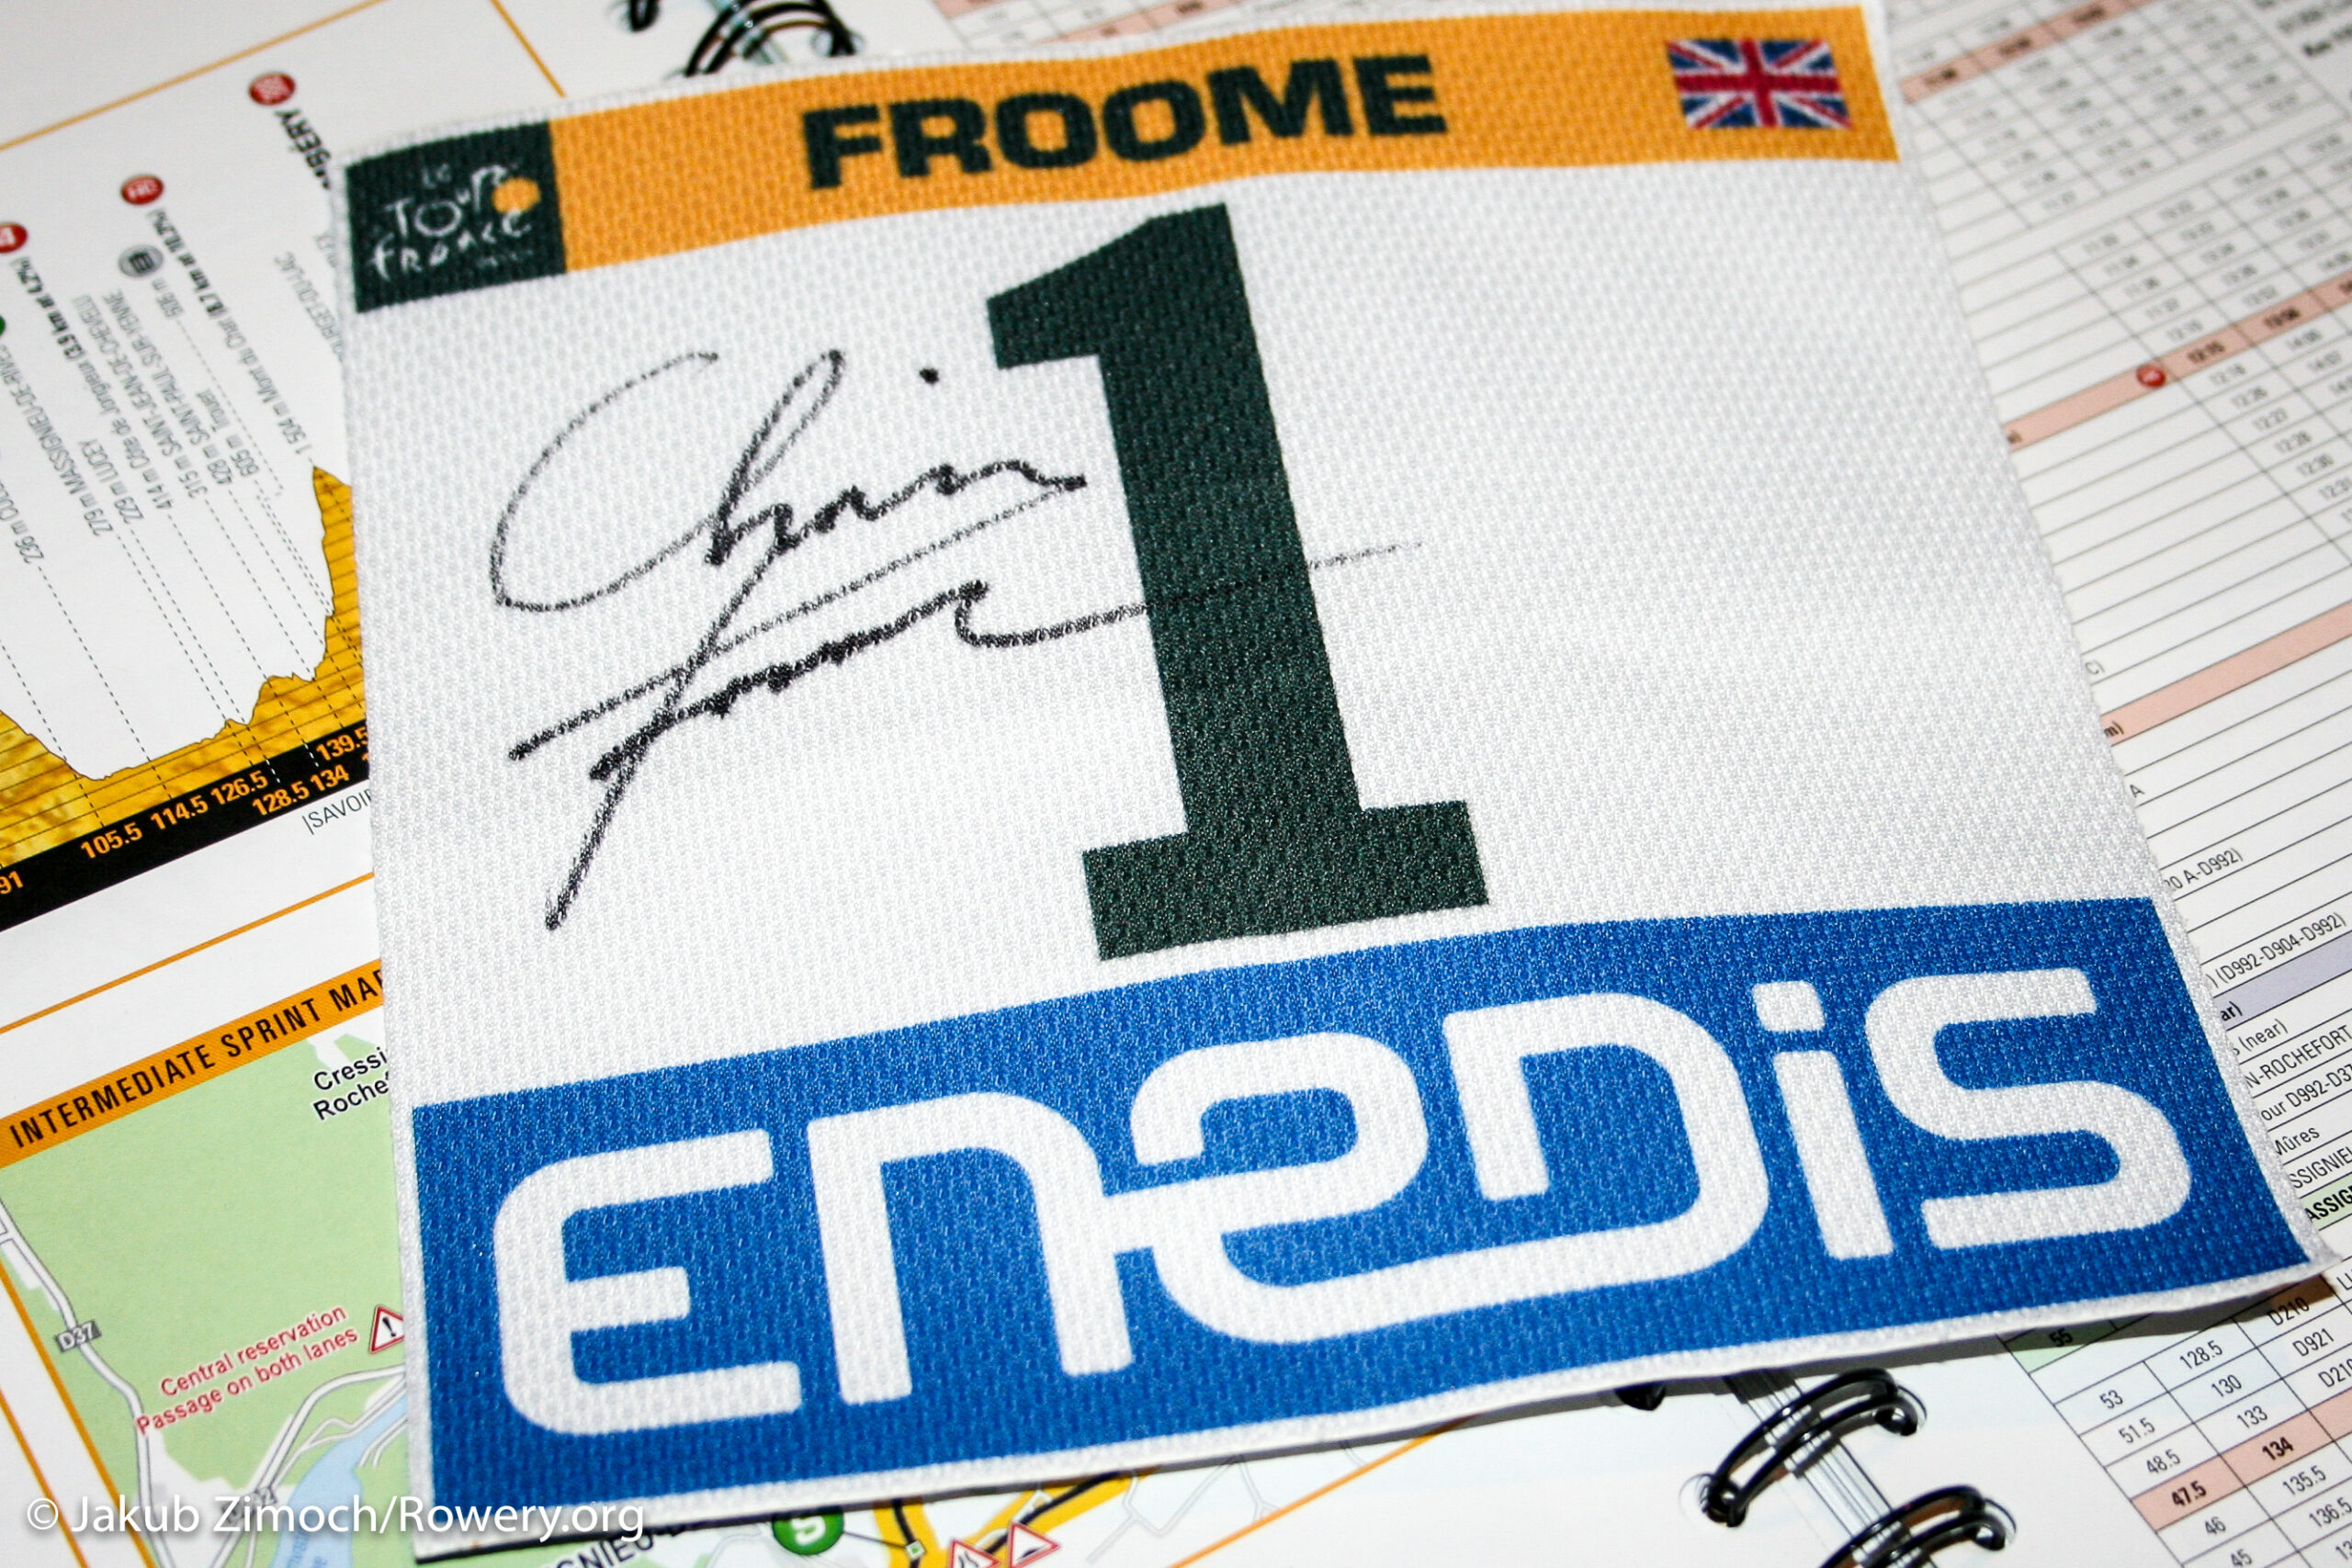 Rozwiązanie konkursu: numer startowy Chrisa Froome’a